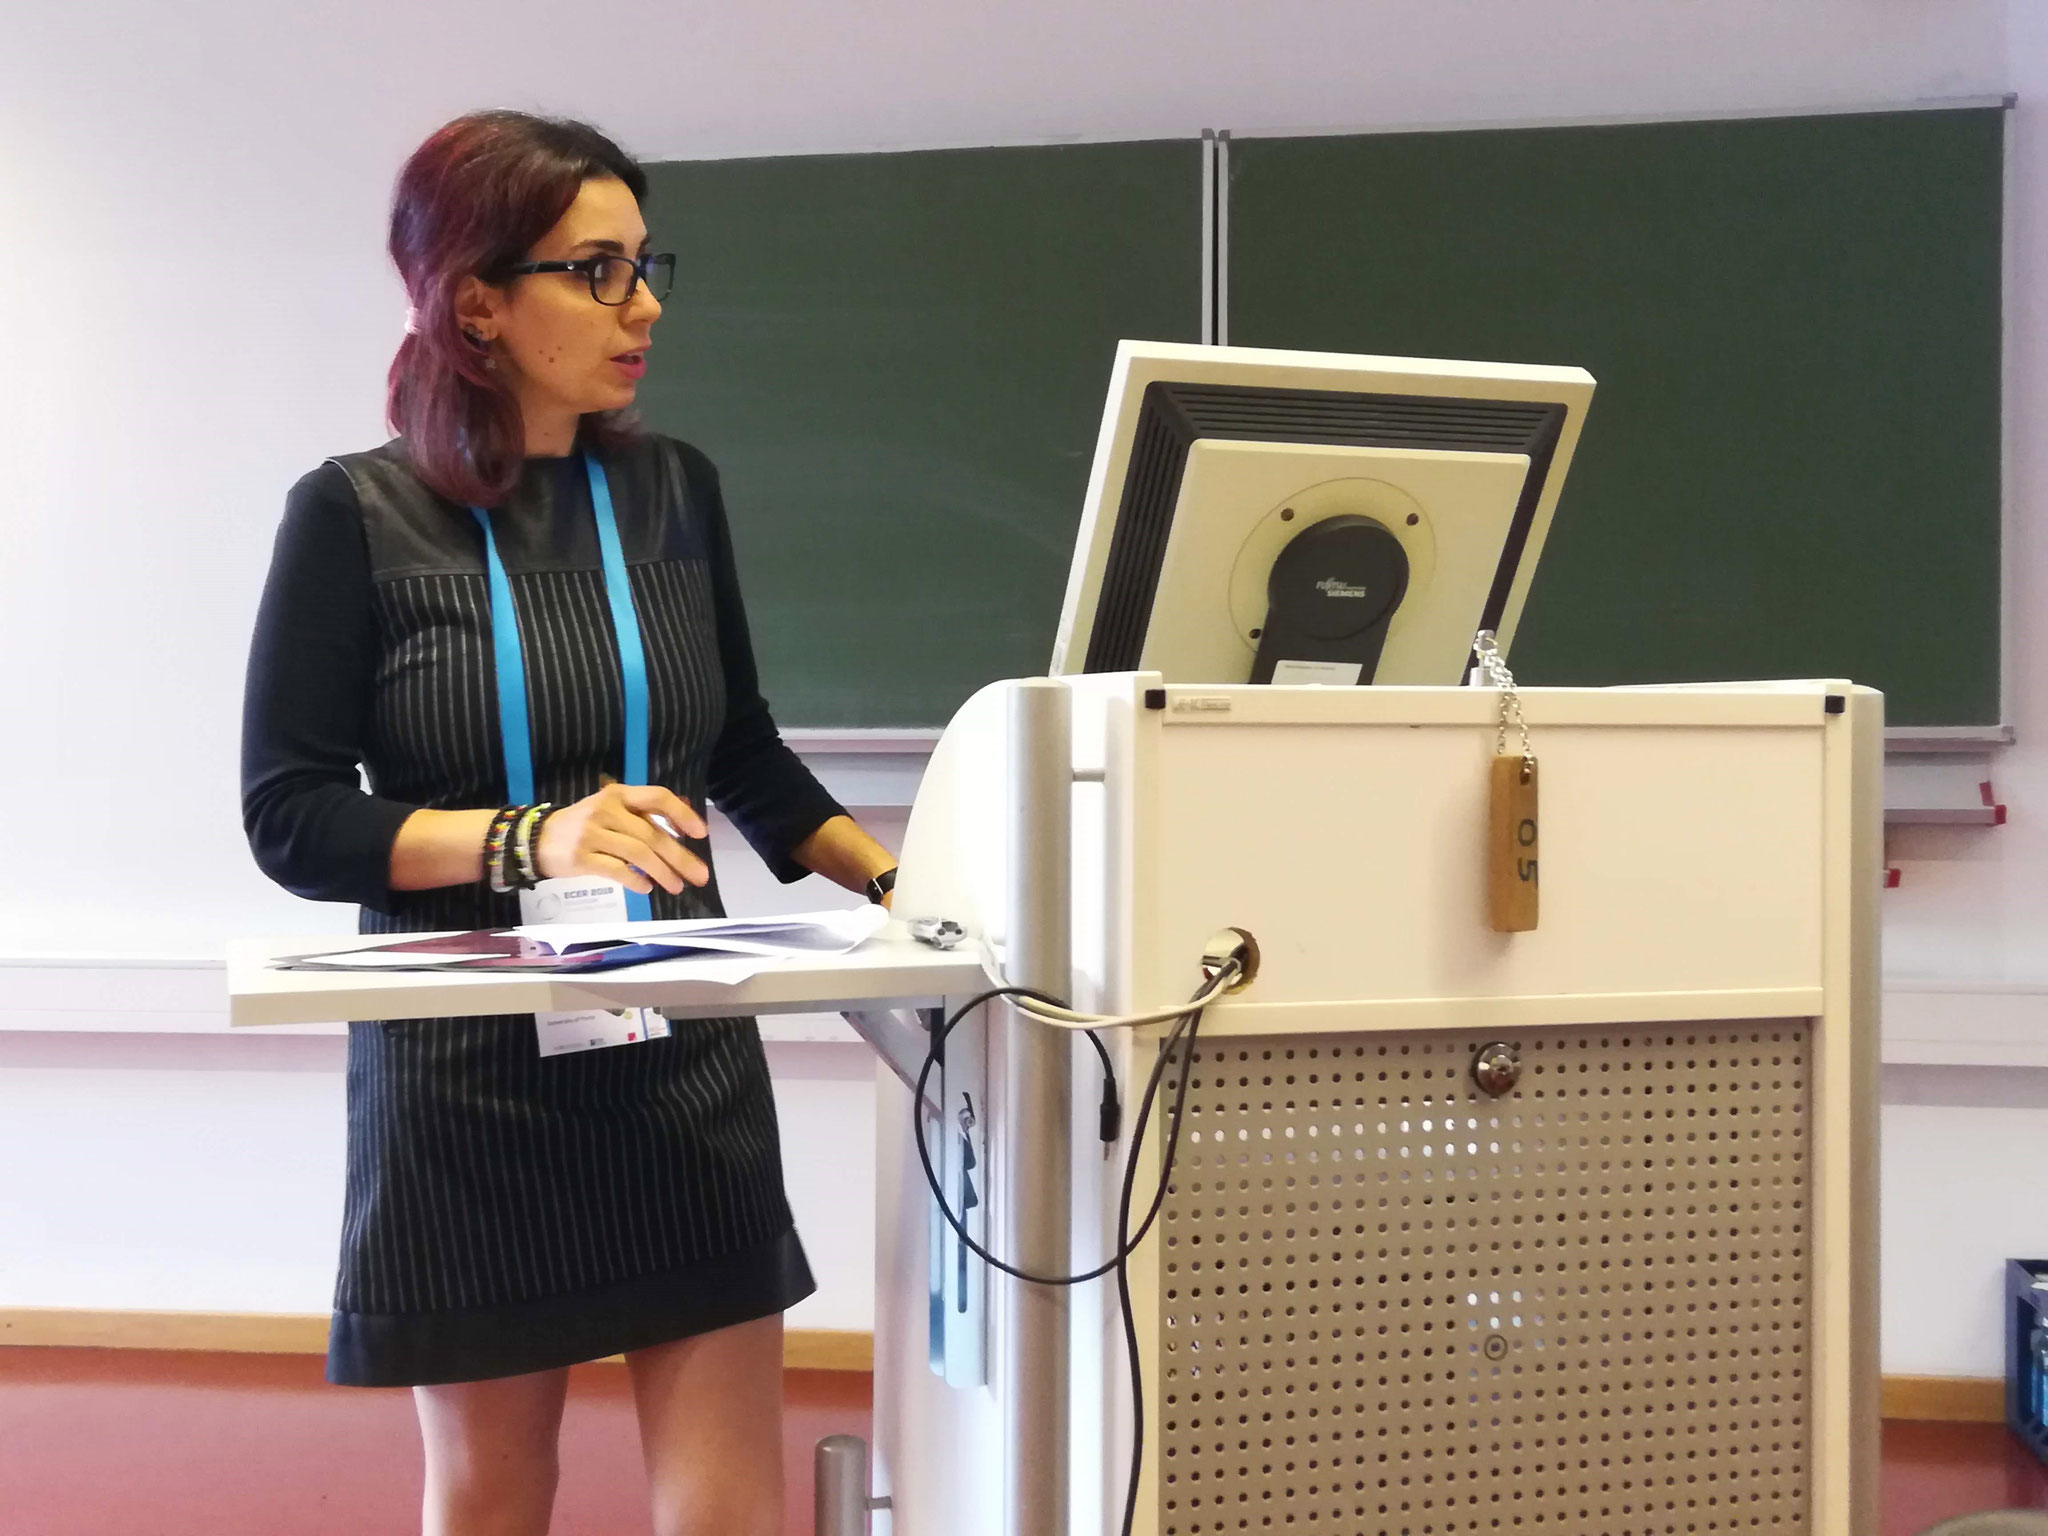 Participação na European Conference on Educational Research, na Universidade de Hamburgo, Alemanha (2019)